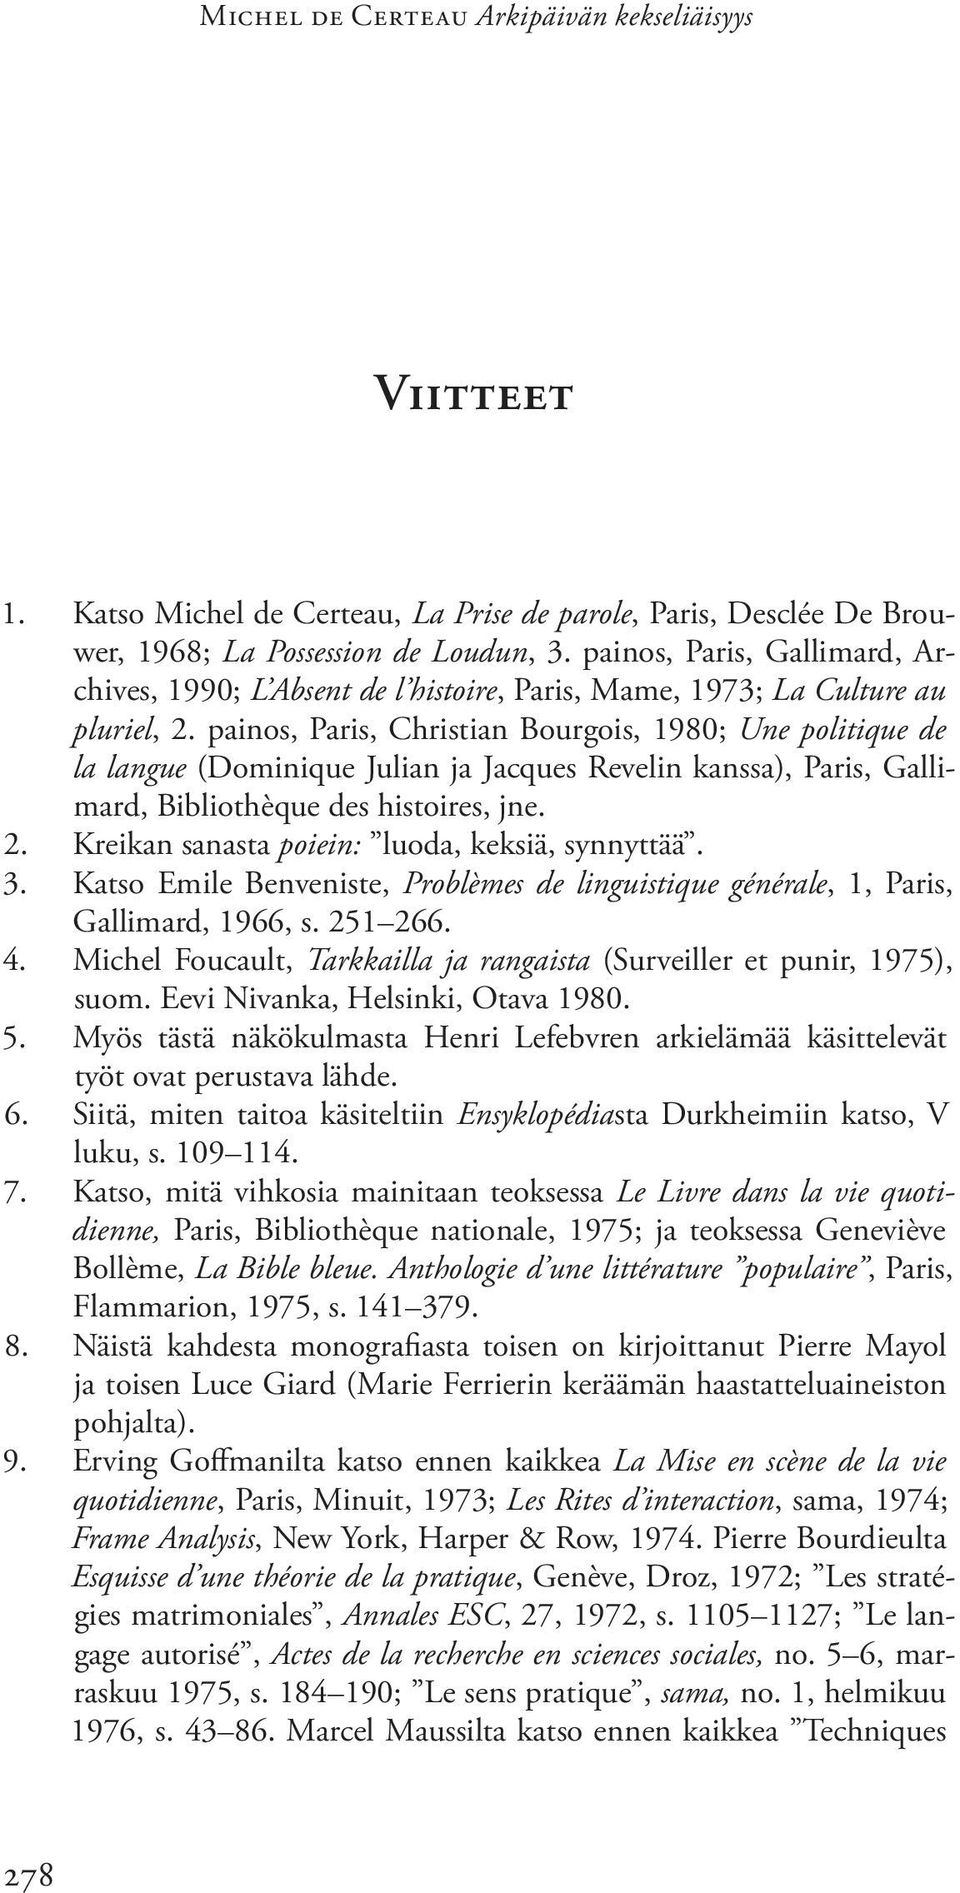 painos, Paris, Christian Bourgois, 1980; Une politique de la langue (Dominique Julian ja Jacques Revelin kanssa), Paris, Gallimard, Bibliothèque des histoires, jne. 2.